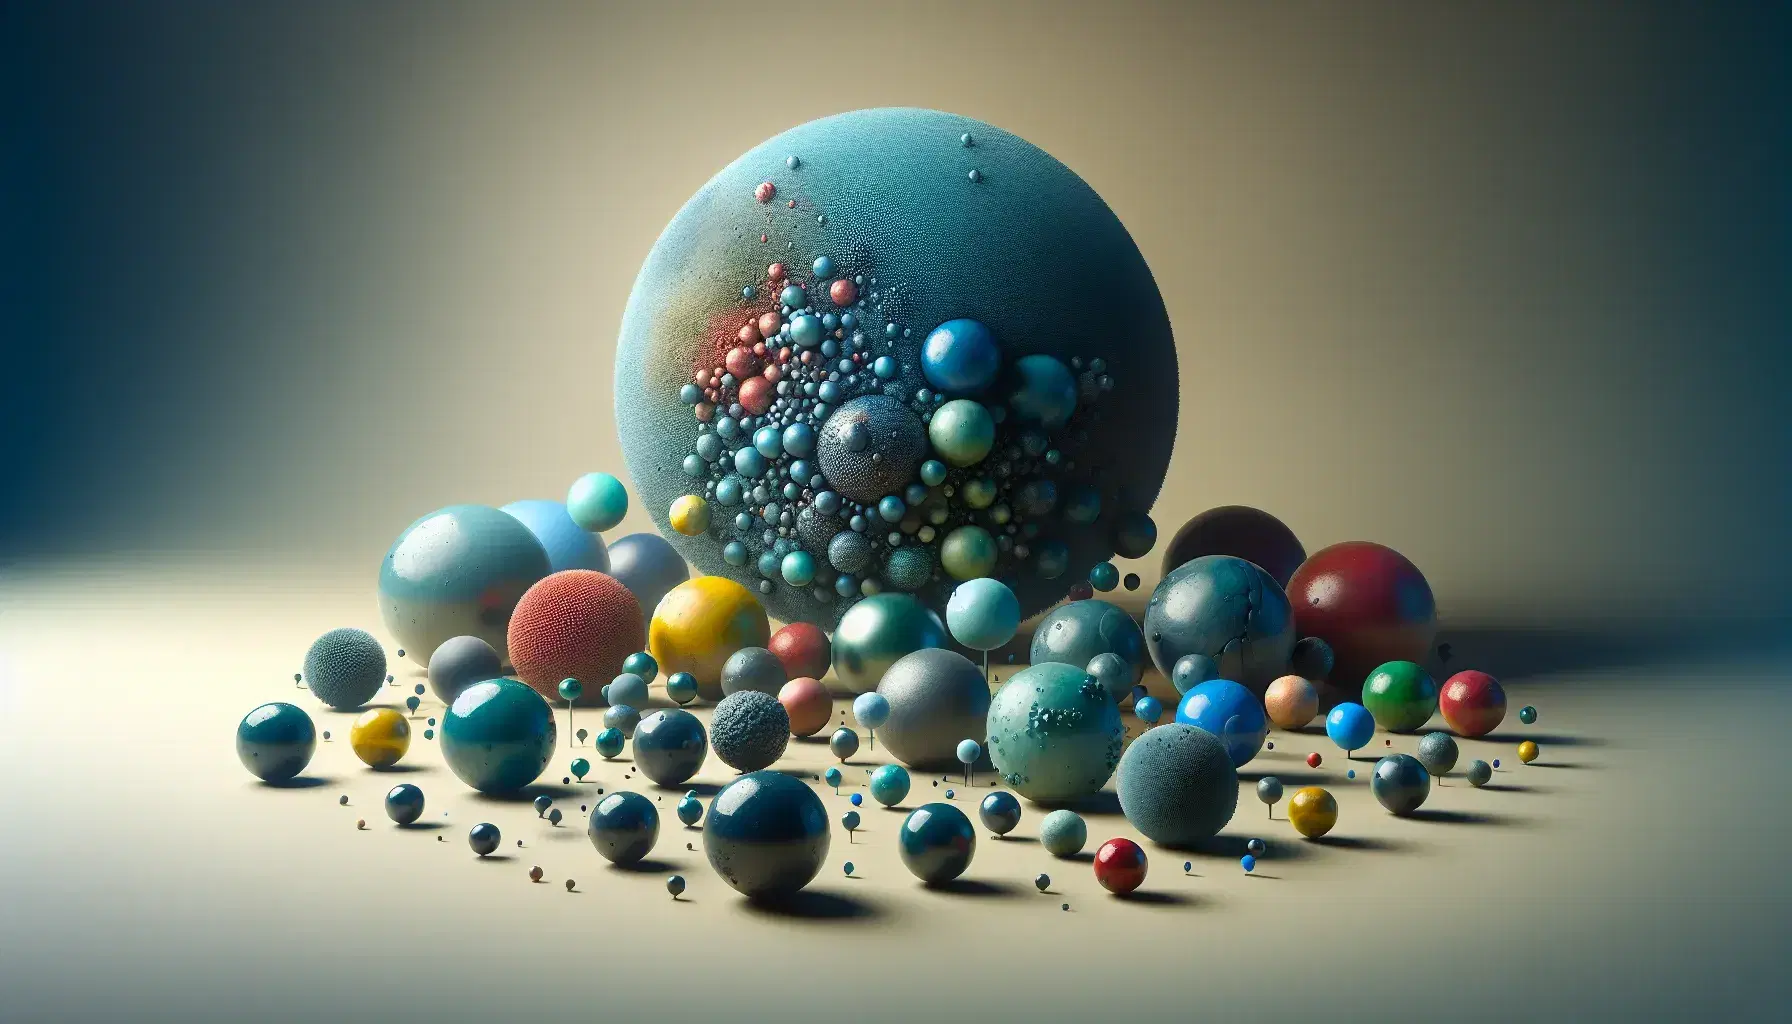 Esferas tridimensionales de distintos tamaños y colores con texturas variadas, dispuestas alrededor de una esfera central azul grande, sobre fondo neutro.